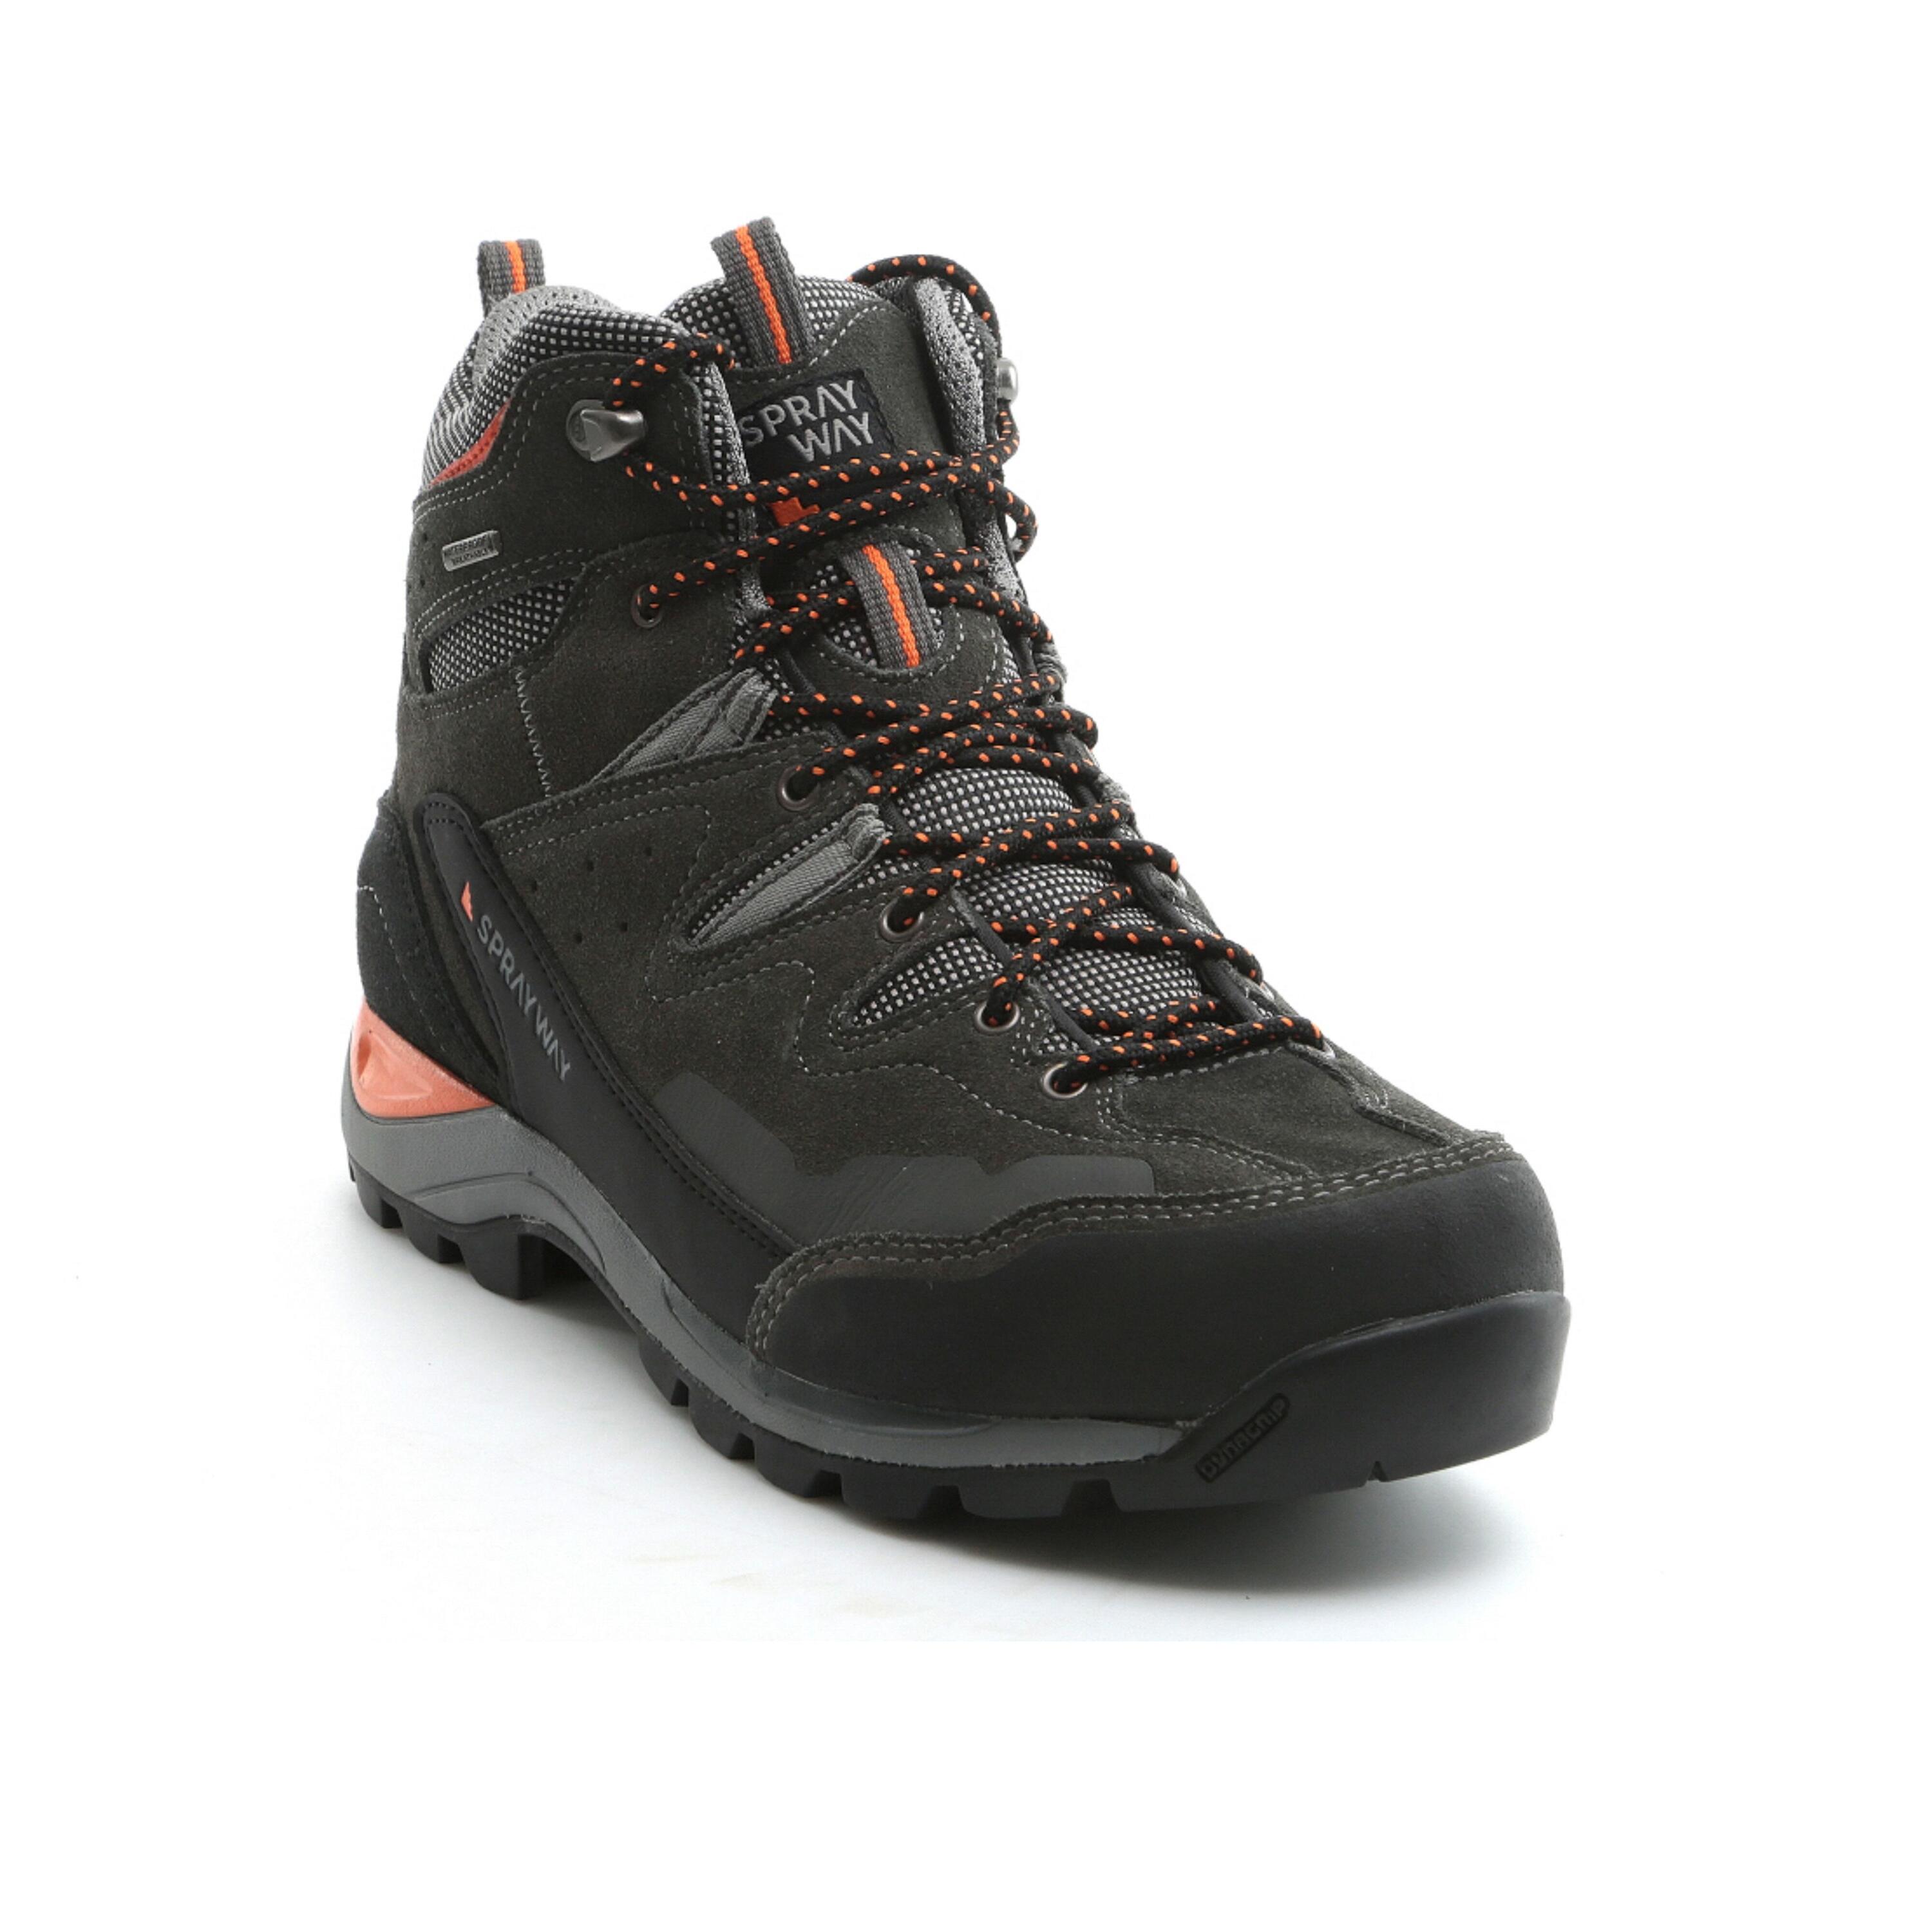 SPRAYWAY Men's waterproof walking boots - Sprayway Oxna mid - Charcoal